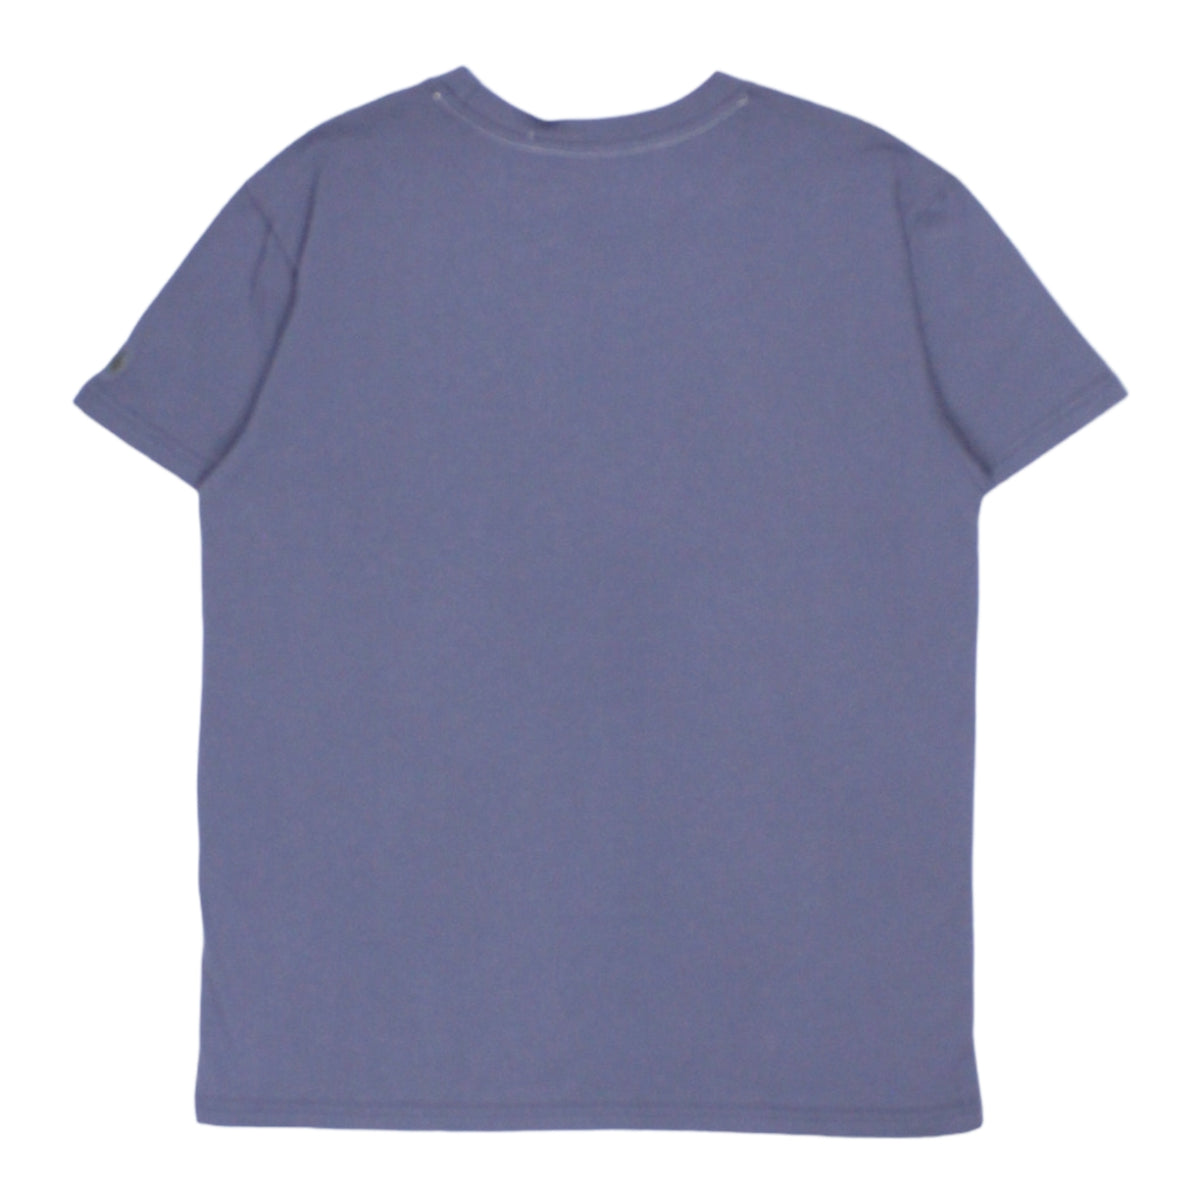 L.F. Markey Grey Albury T-Shirt